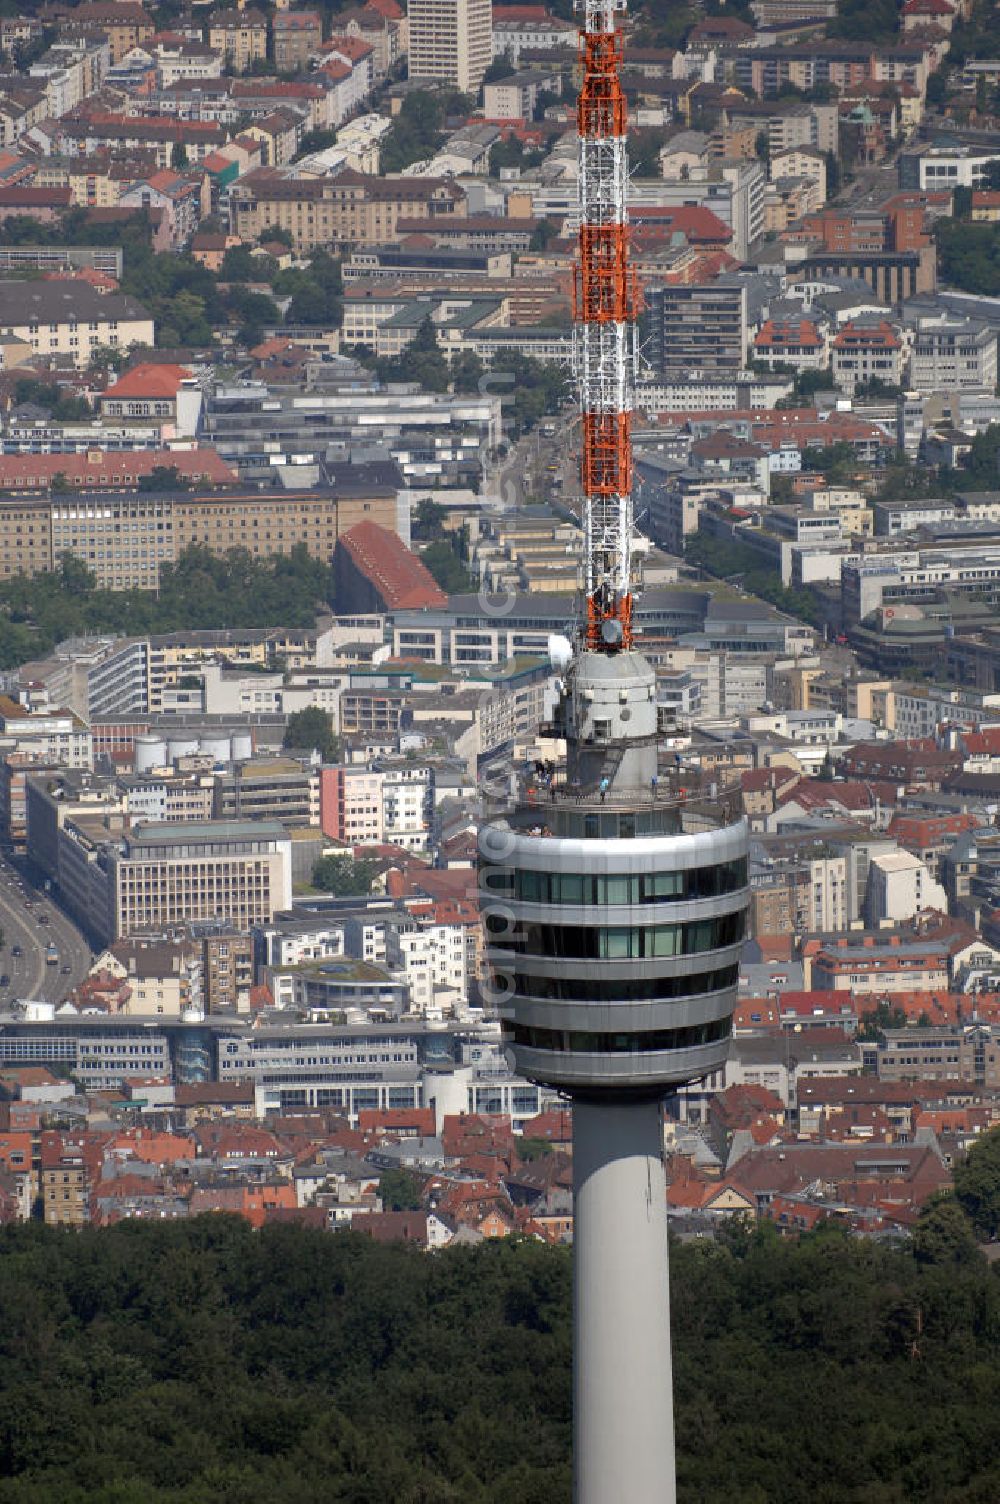 Aerial image STUTTGART - STUTTGART 01.07.2008 Der Stuttgarter Fernsehturm ist ein Sendeturm des Südwestrundfunks zur Versorgung der Region Stuttgart mit dessen Rundfunkprogrammen. Er ist der weltweit erstgebaute Fernsehturm aus Stahlbeton. Ungeachtet seinen Namens strahlt der Turm seit 2006 nur noch Hörfunkprogramme aus.Im Jahr 1949 begann der damalige Süddeutsche Rundfunk (SDR) – heute Südwestrundfunk (SWR) – mit dem Aufbau seines UKW-Rundfunknetzes. Zur Versorgung der Region Stuttgart wurde 1950 der Sender Stuttgart-Degerloch auf dem Hoffeld in Betrieb genommen. Der dort genutzte 100 Meter hohe Stahlgitterturm ermöglichte jedoch keine lückenlose Versorgung der topografisch anspruchsvollen Umgebung. Es zeigte sich, dass dazu ein etwa doppelt so hoher Antennenträger notwendig war. Als neuer Träger für Radio- und Fernsehantenne war ursprünglich ebenfalls ein Stahlgitterturm vorgesehen. Doch der Turm- und Brückenkonstrukteur Fritz Leonhardt konzipierte mit dem Architekten Erwin Heinle einen eleganten Stahlbetonturm, dessen Turmkorb auch touristisch genutzt werden sollte. Der Vorteil für den Süddeutschen Rundfunk zeigte sich bereits nach kurzer Zeit: Die Baukosten in Höhe von 4,2 Millionen Mark hatten sich durch die Besucher innerhalb von fünf Jahren amortisiert. Damit wurde der Fernsehturm in Stuttgart das Vorbild für unzählige Konstruktionen in der Welt. Er ist im Besitz der Deutschen Telekom.